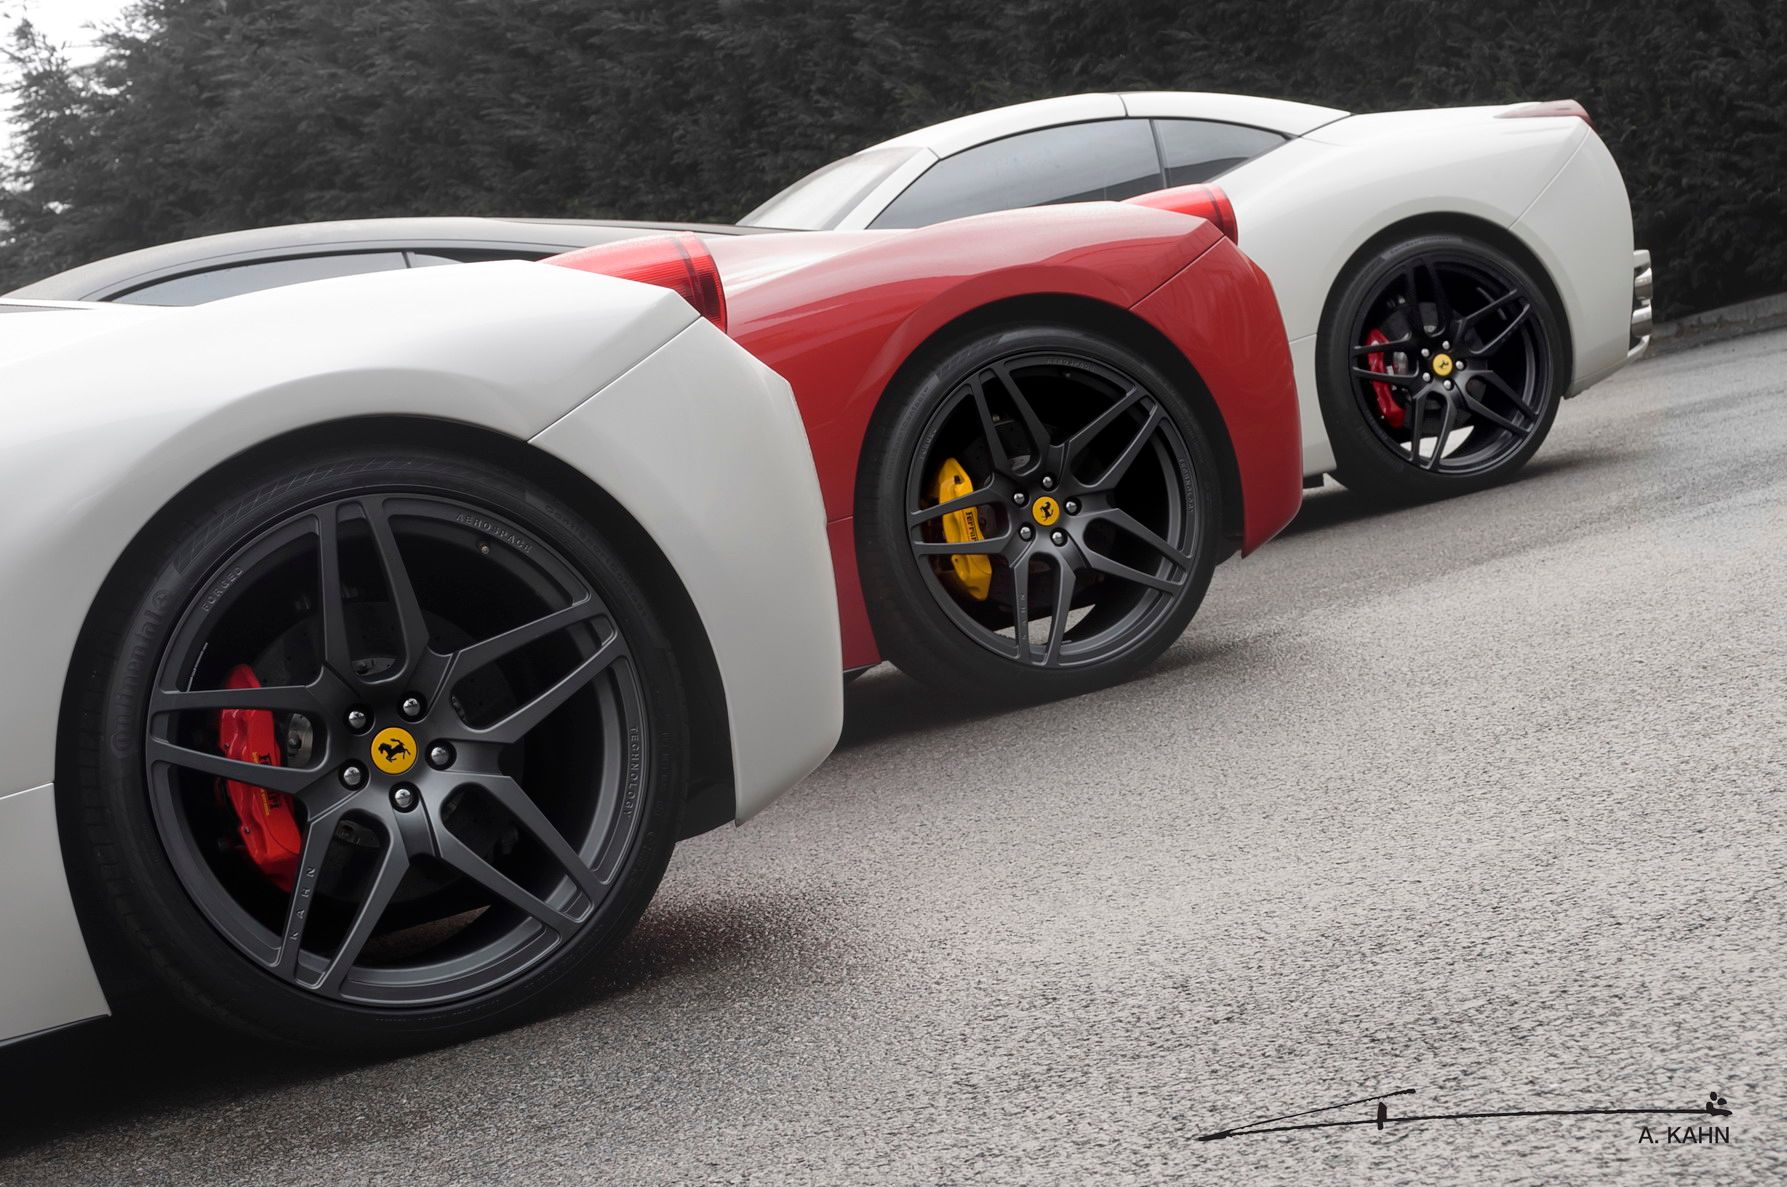 2012 Ferrari 458 Italia Editions by A. Kahn Design